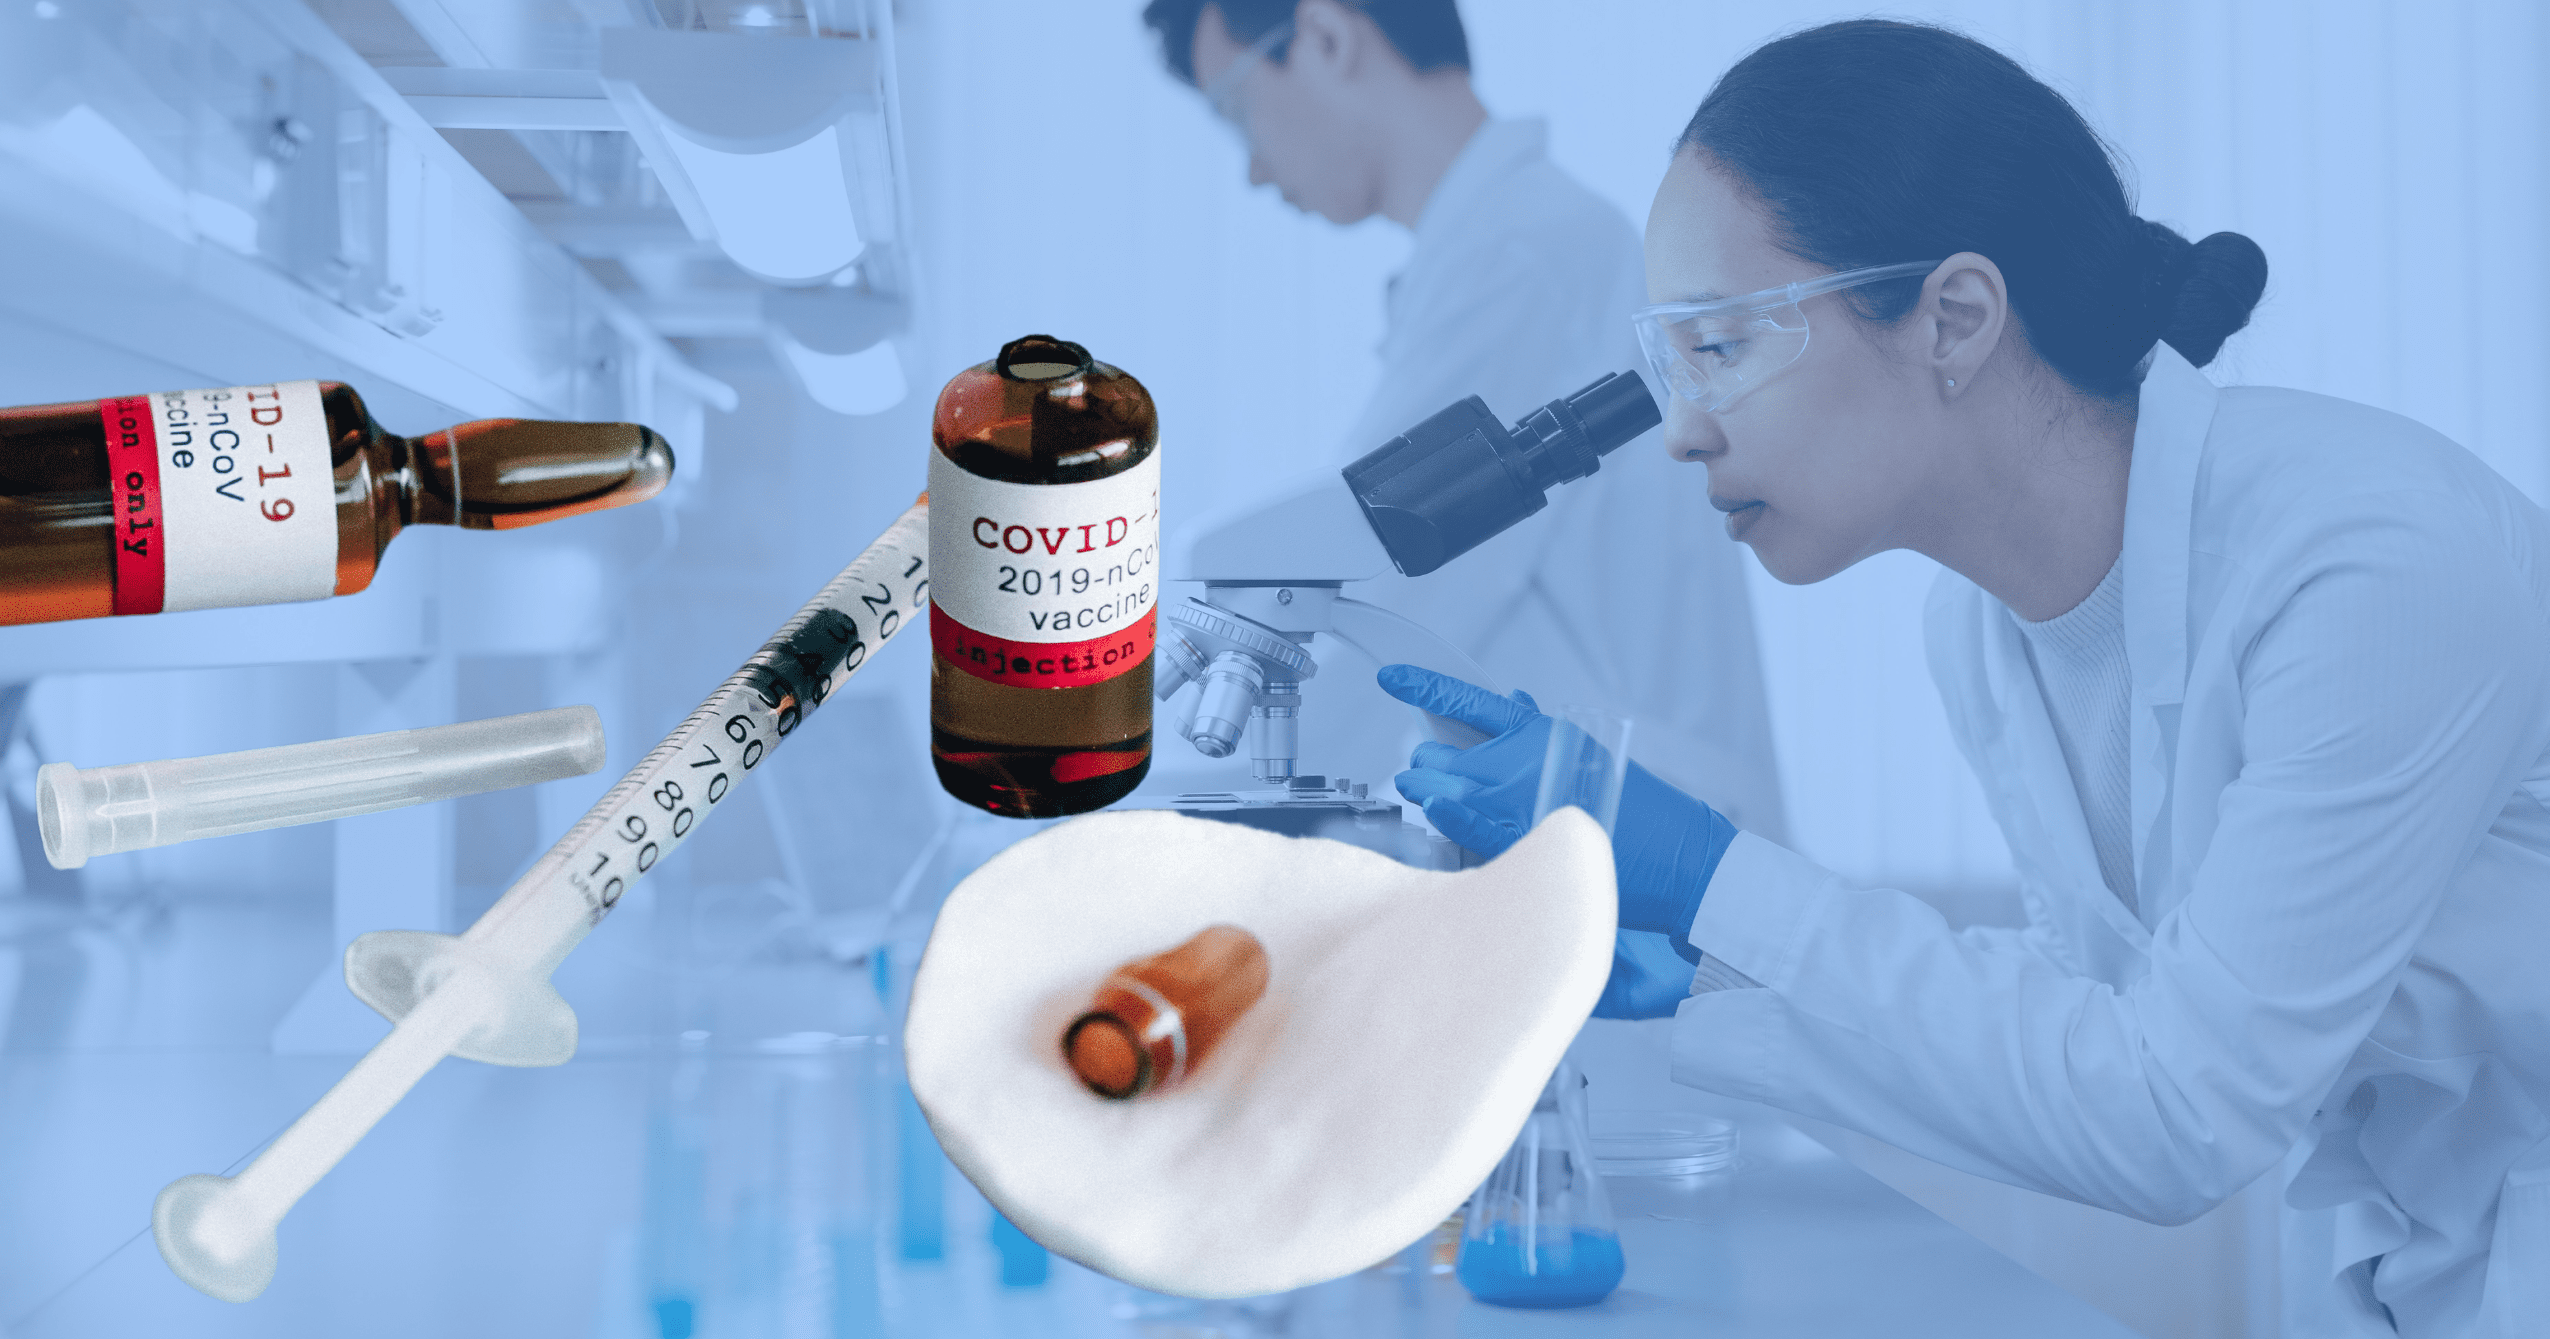 Na pierwszym planie fiolki ze szczepionką przeciw COVID-19, wacik i strzykawka. W tle kobieta ubrana w biały kitel i w okularach do eksperymentów przygląda się próbce przez mikroskop.